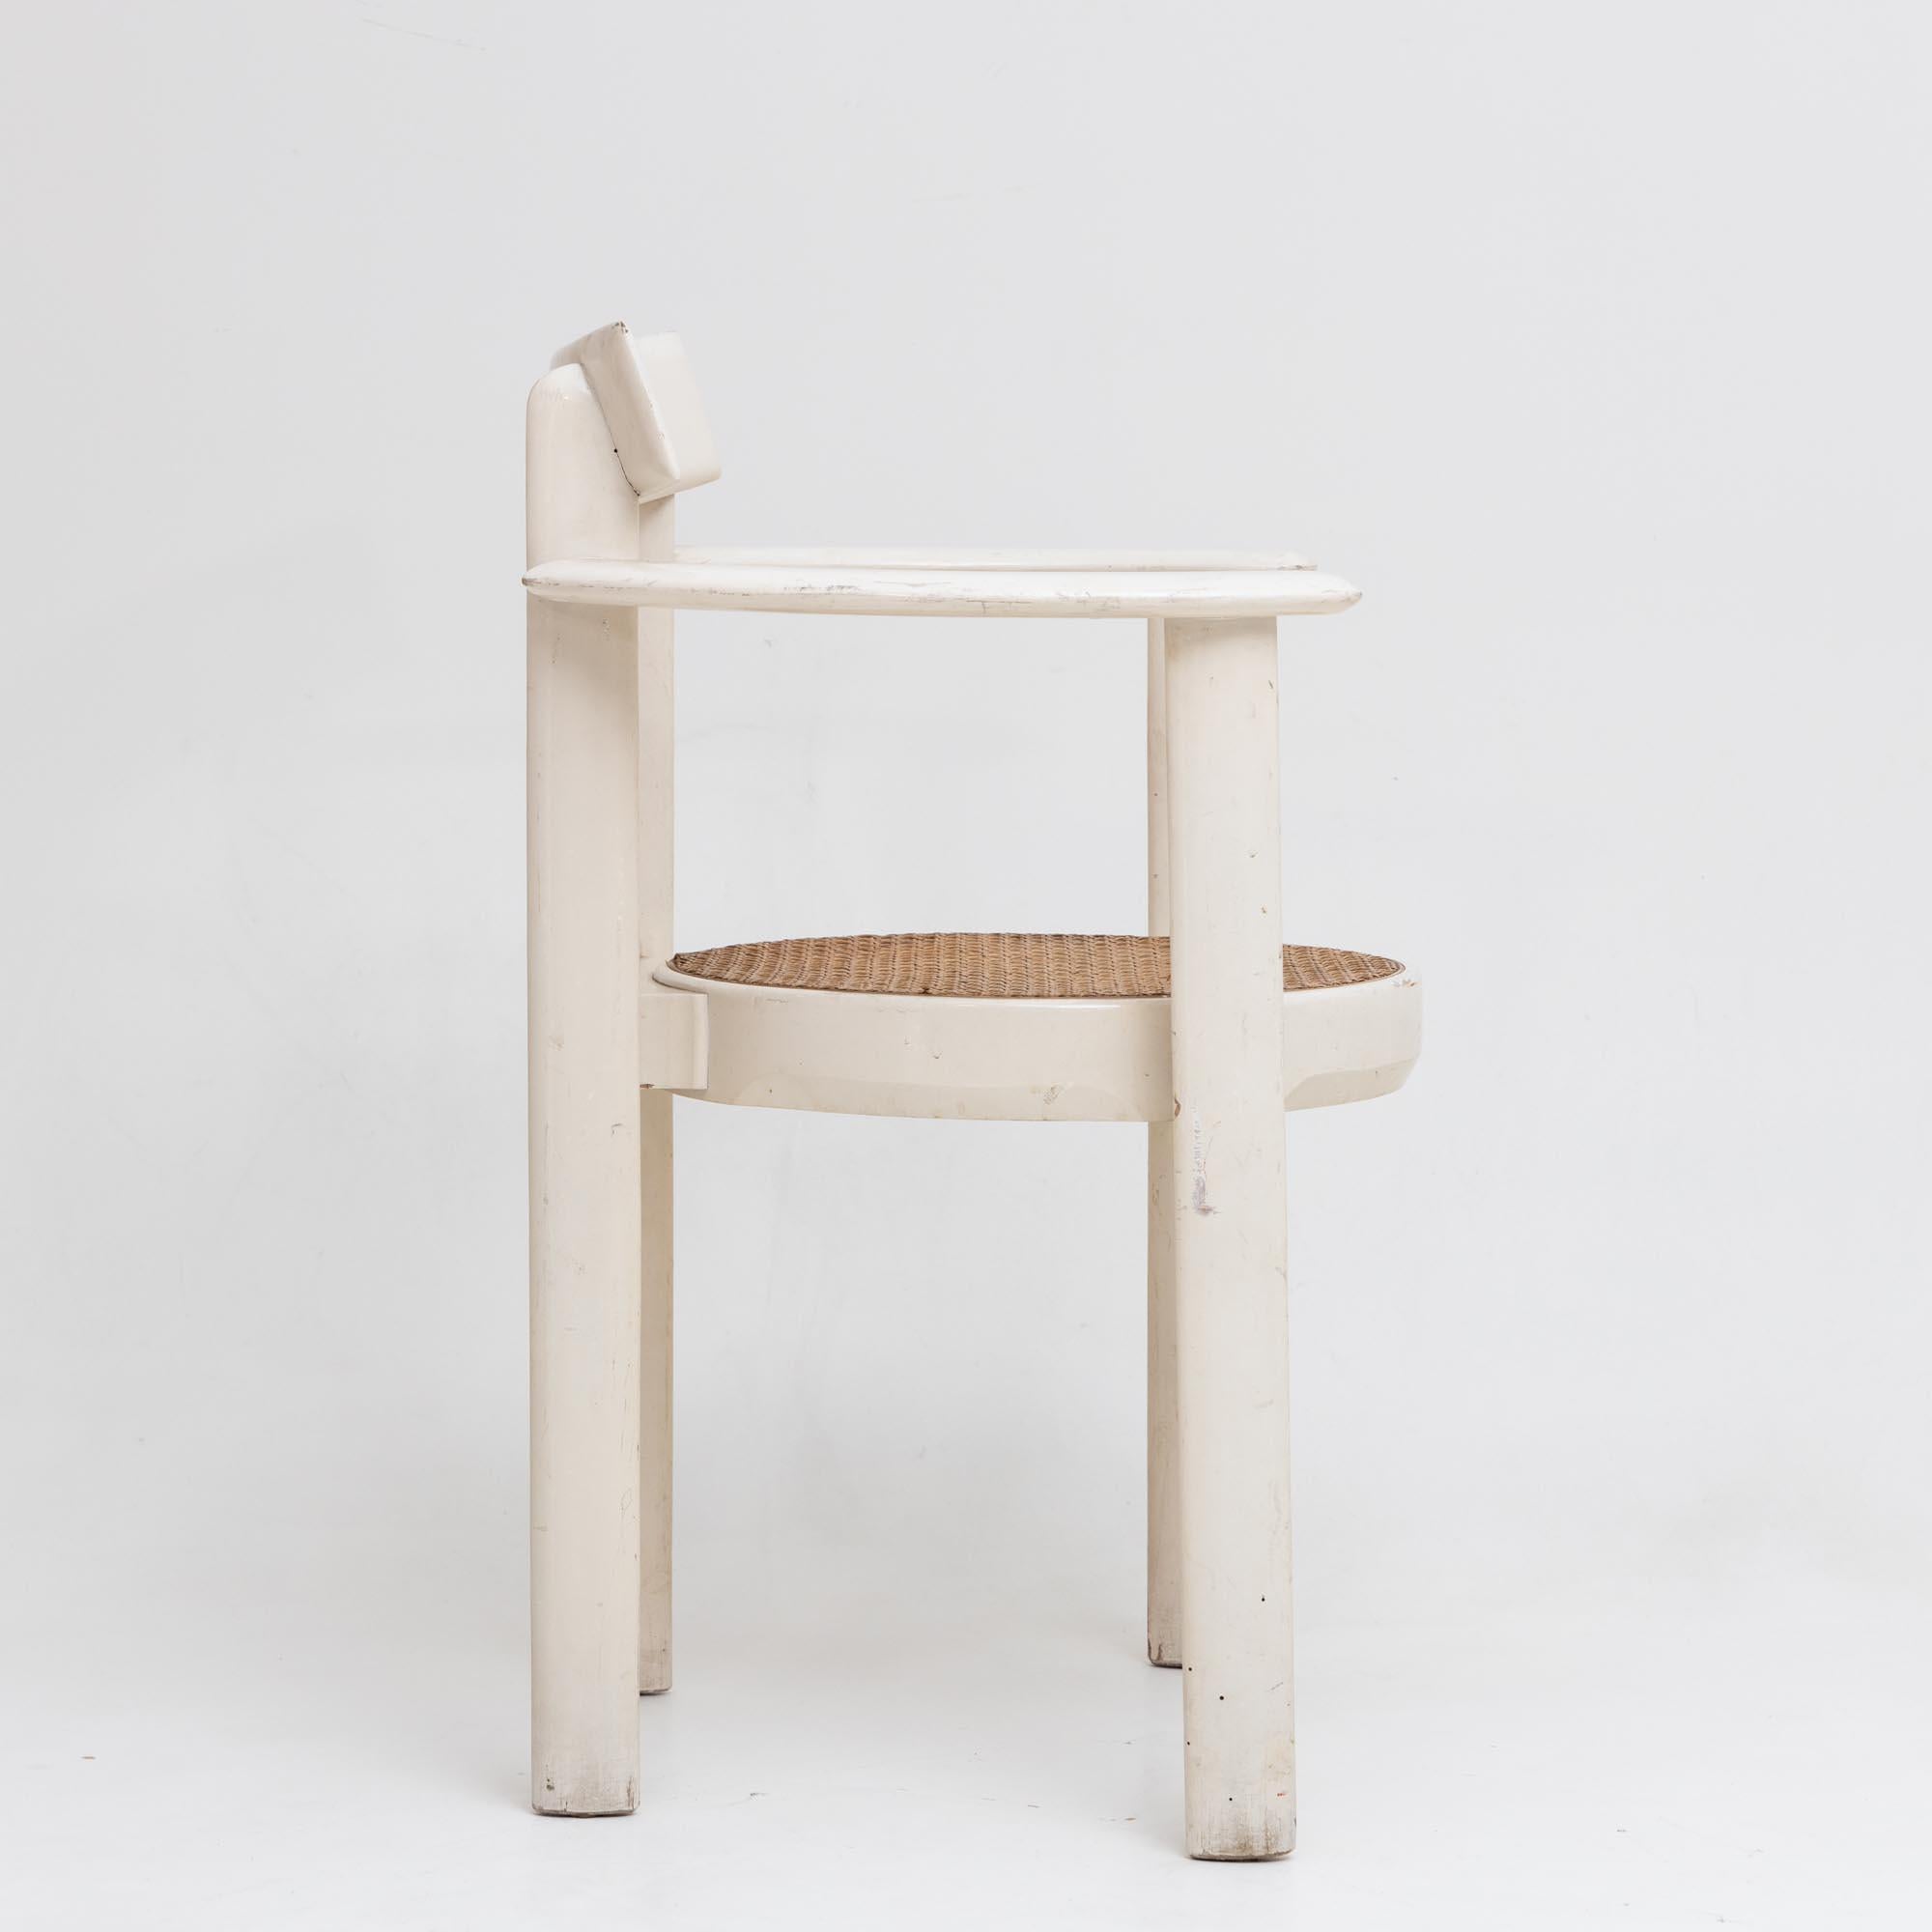 Fauteuil avec assise ronde en osier et structure laquée blanche avec accoudoirs incurvés. La chaise a été conçue par Willy Rizzo dans les années 1970. État d'origine avec des signes d'âge et d'utilisation.